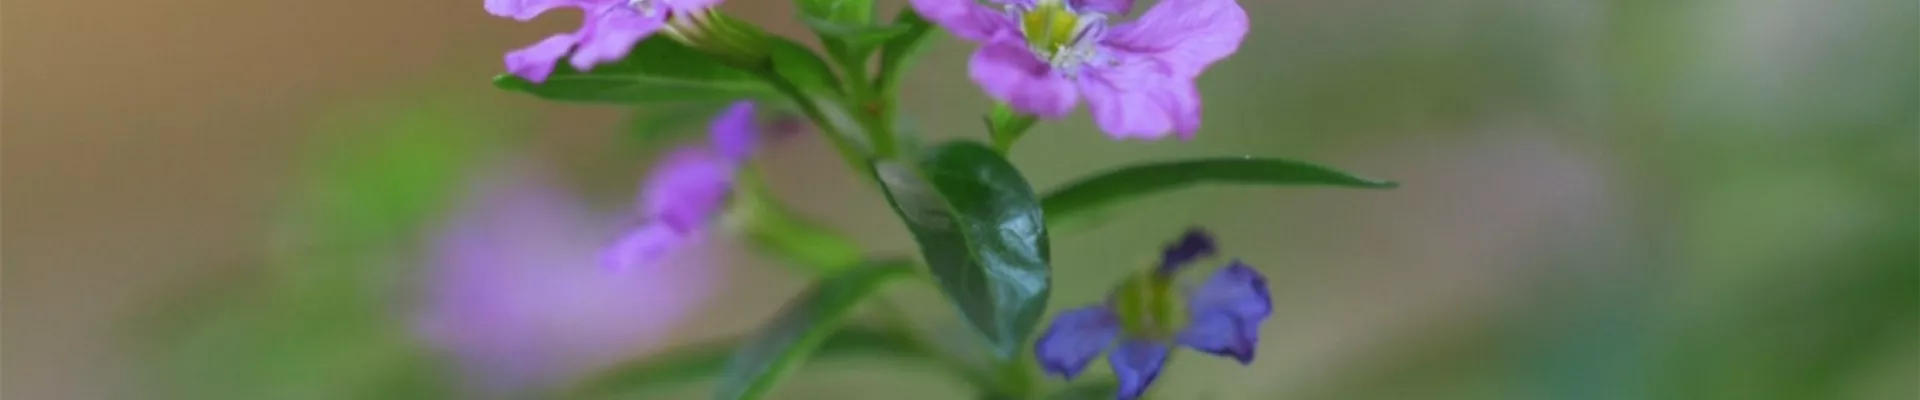 Köcherblume - Einpflanzen im Garten (thumbnail).jpg